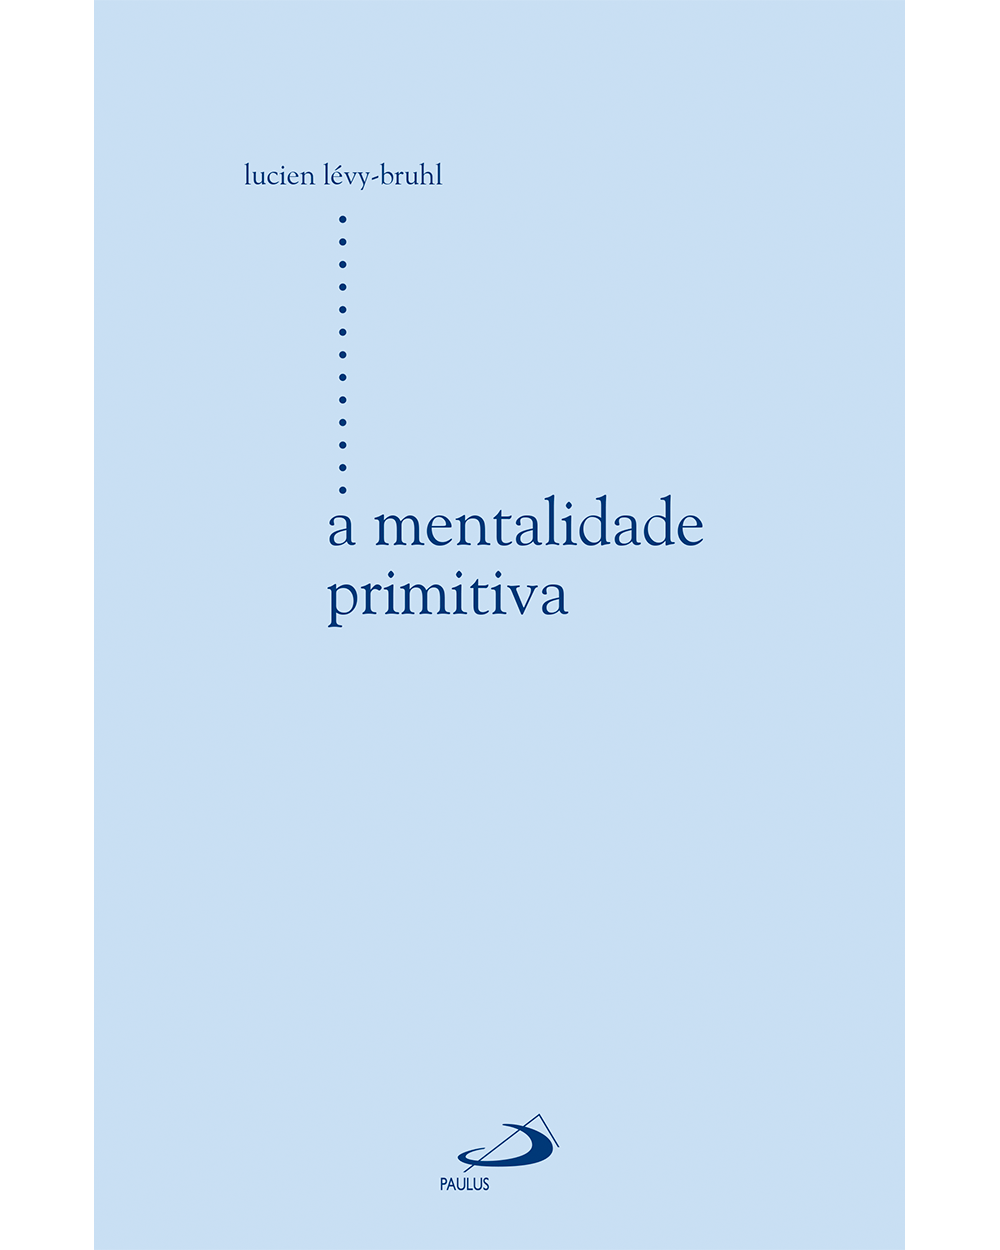 A mentalidade primitiva - Paulus Editora